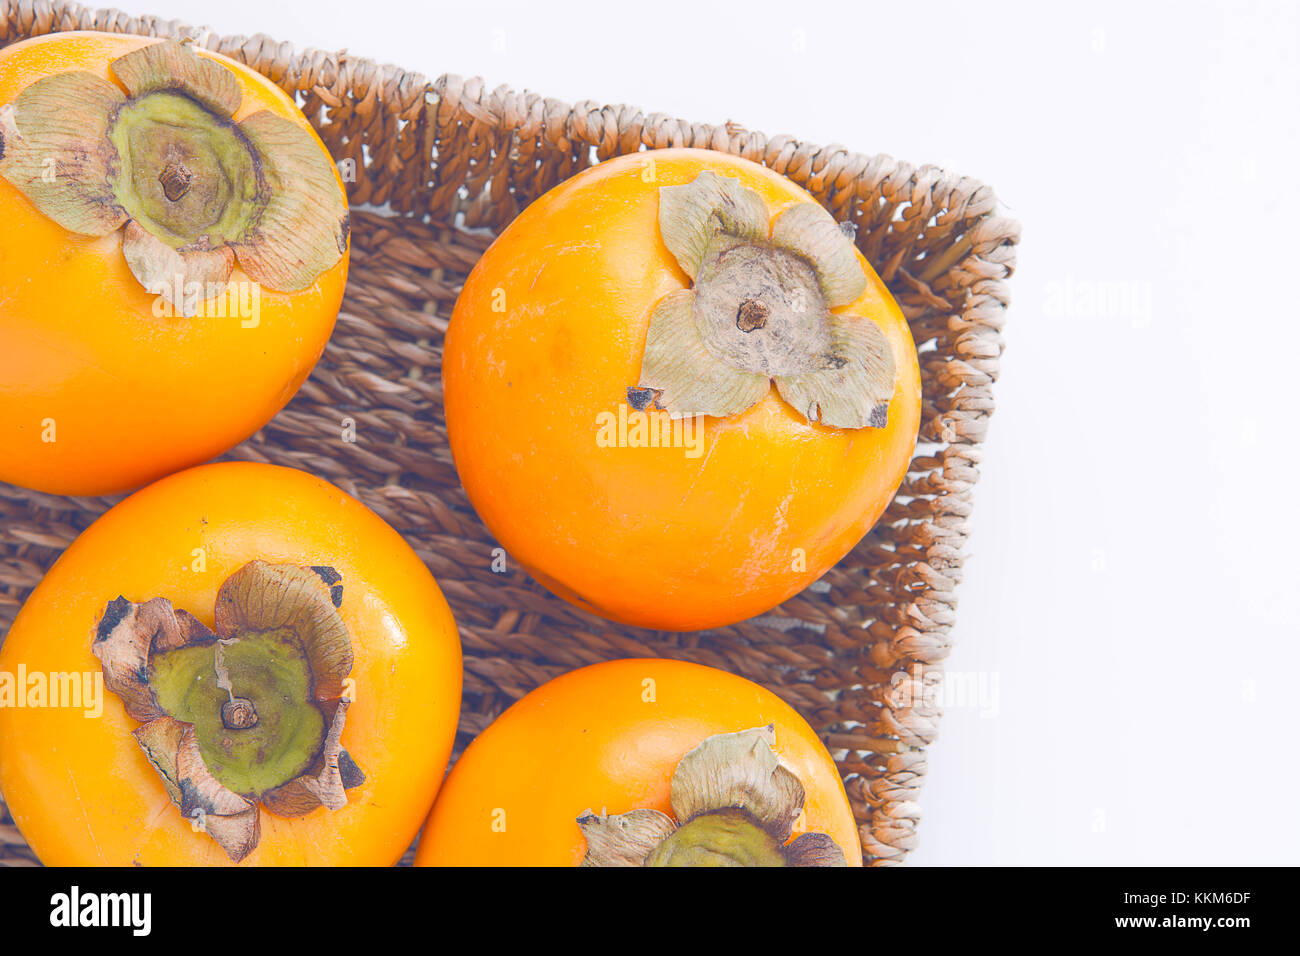 Fraîches et naturelles dans le panier de fruits kaki sur fond blanc Banque D'Images